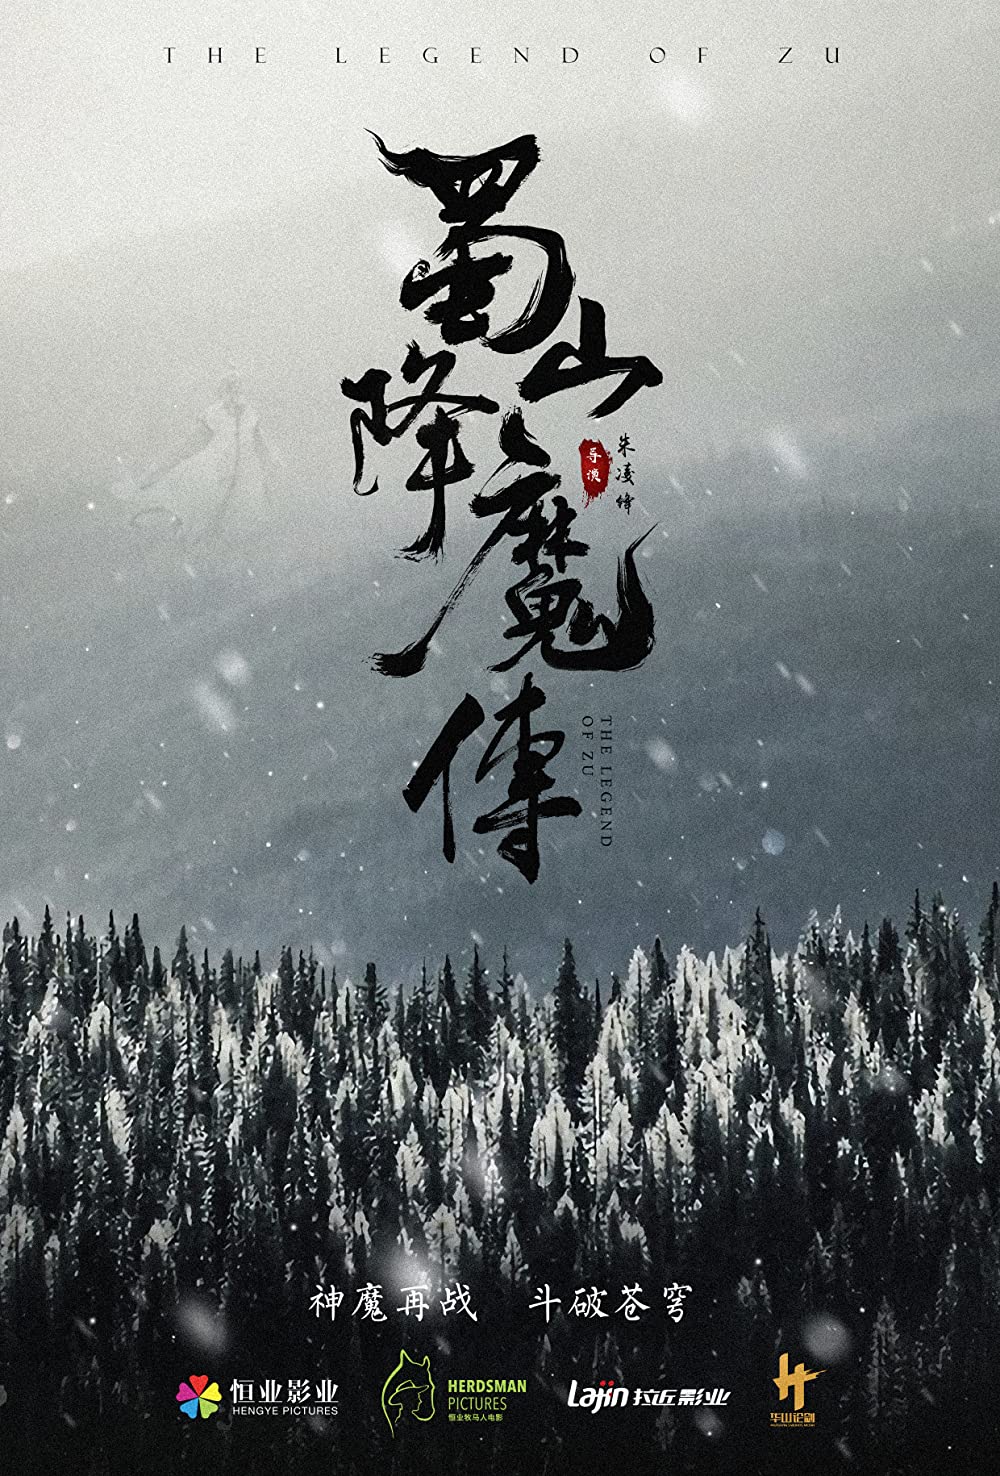 ดูหนัง The Legend Of Zu (2001) ซูซัน ศึกเทพยุทธถล่มฟ้า